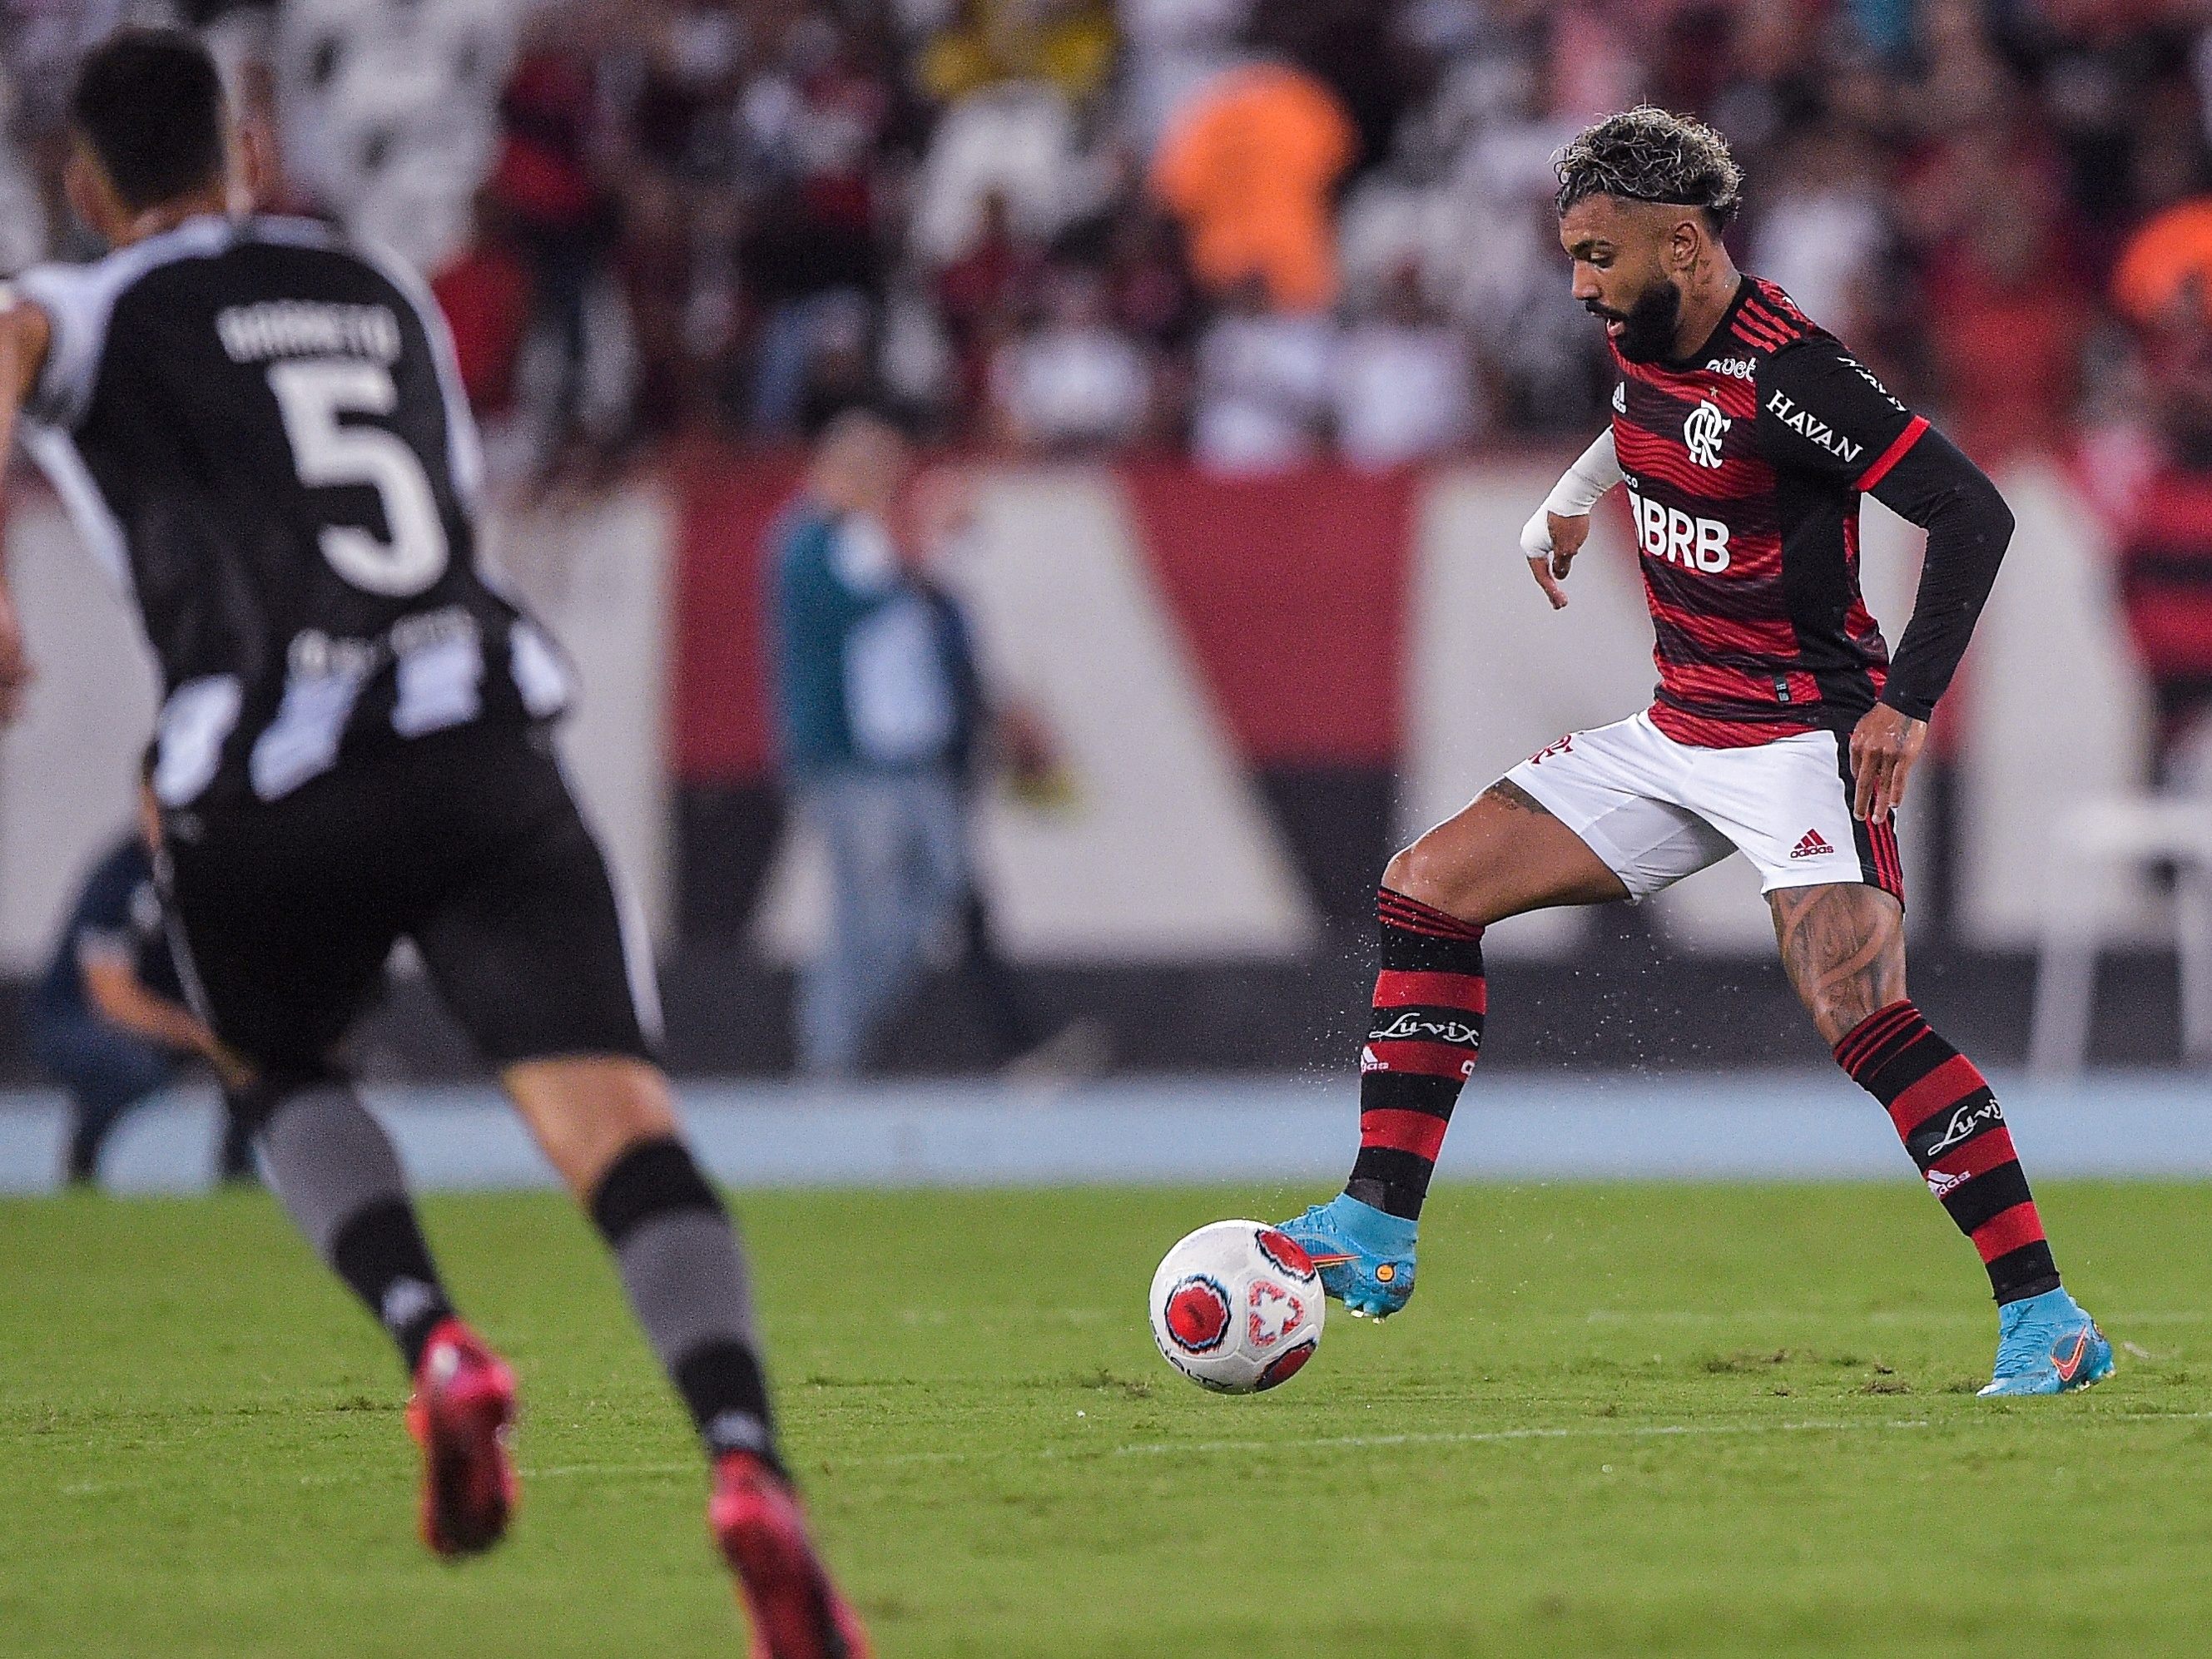 BRASILEIRÃO: Em jogos atrasados, Flamengo vence e Botafogo perde a última  'muleta' - GF Esporte